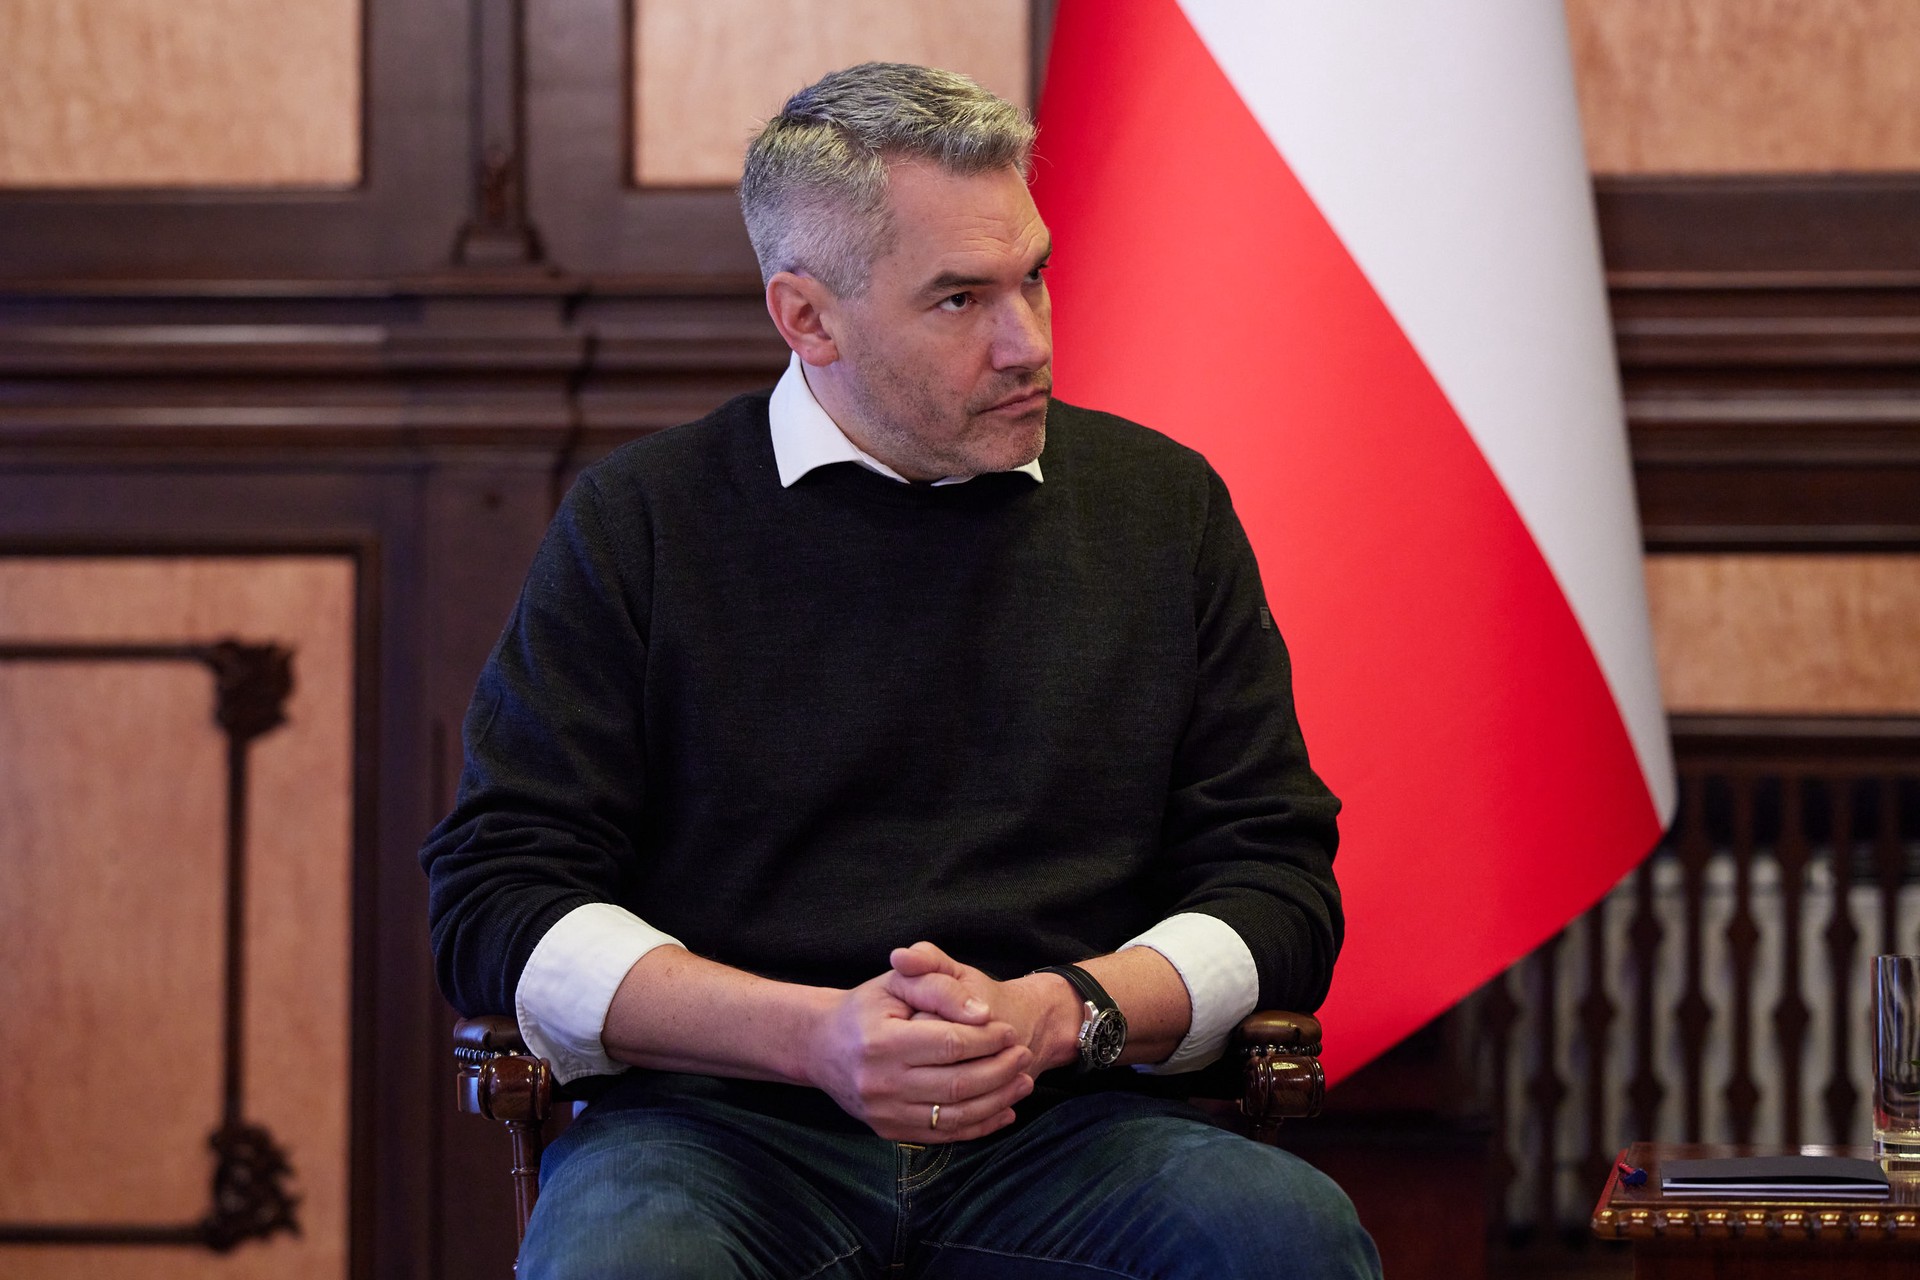 Чувство Вены: почему Австрия присоединилась к блоку противников членства Украины в ЕС